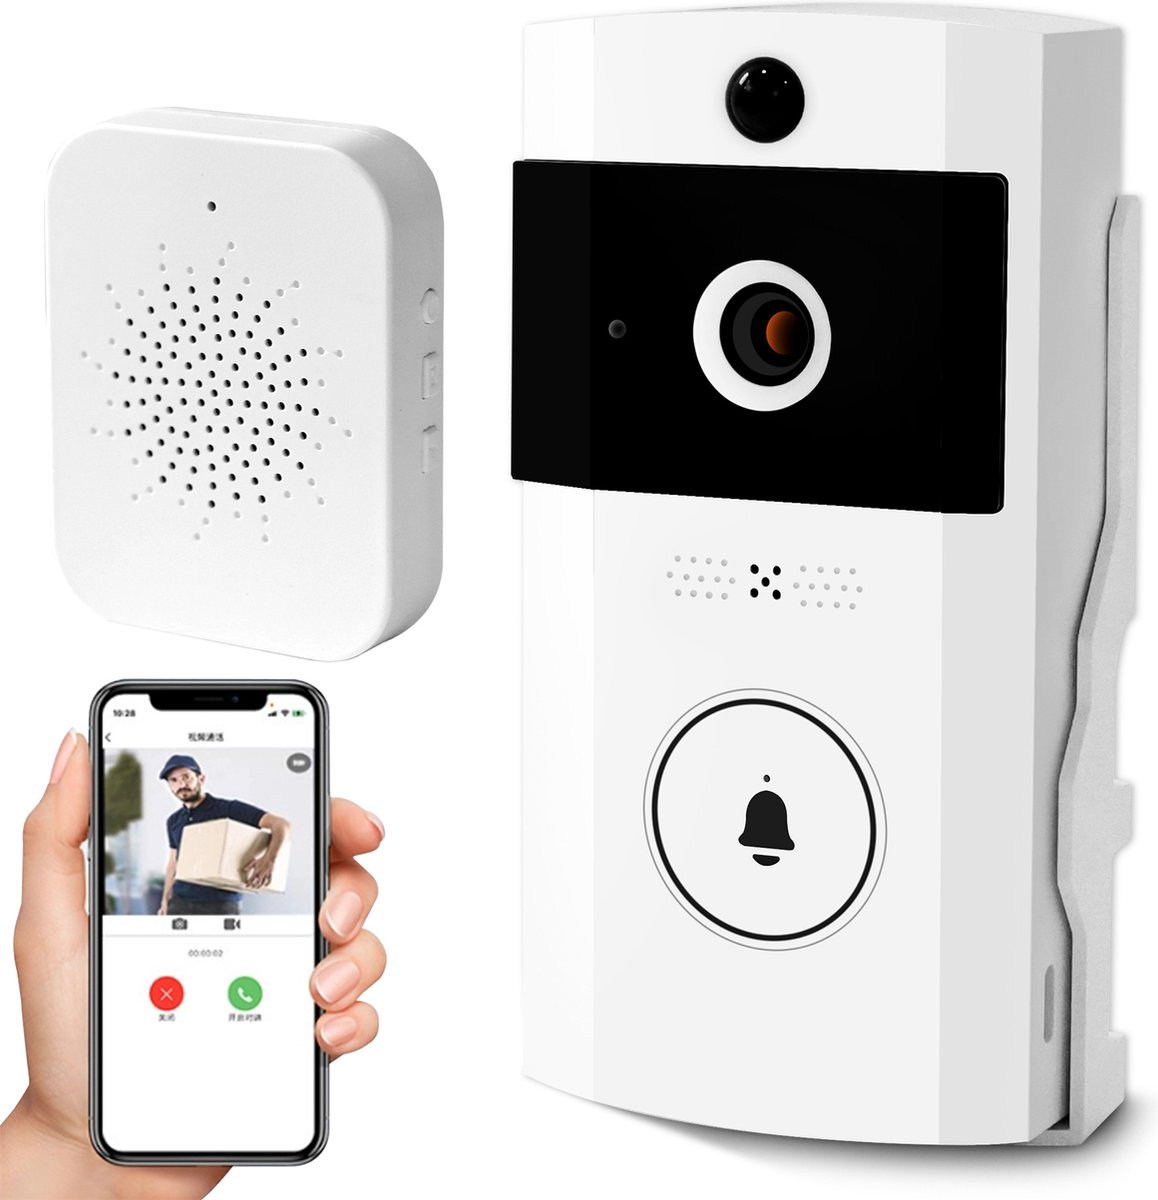 XD&L - Slimme Deurbellen Serie - Deurbelsets- Deurbellen Met Camera - Smart WiFi Video Doorbell - Motion Detection - Variabele Spraakintercom - Video Oproepen - Cloud Opslag - Wit